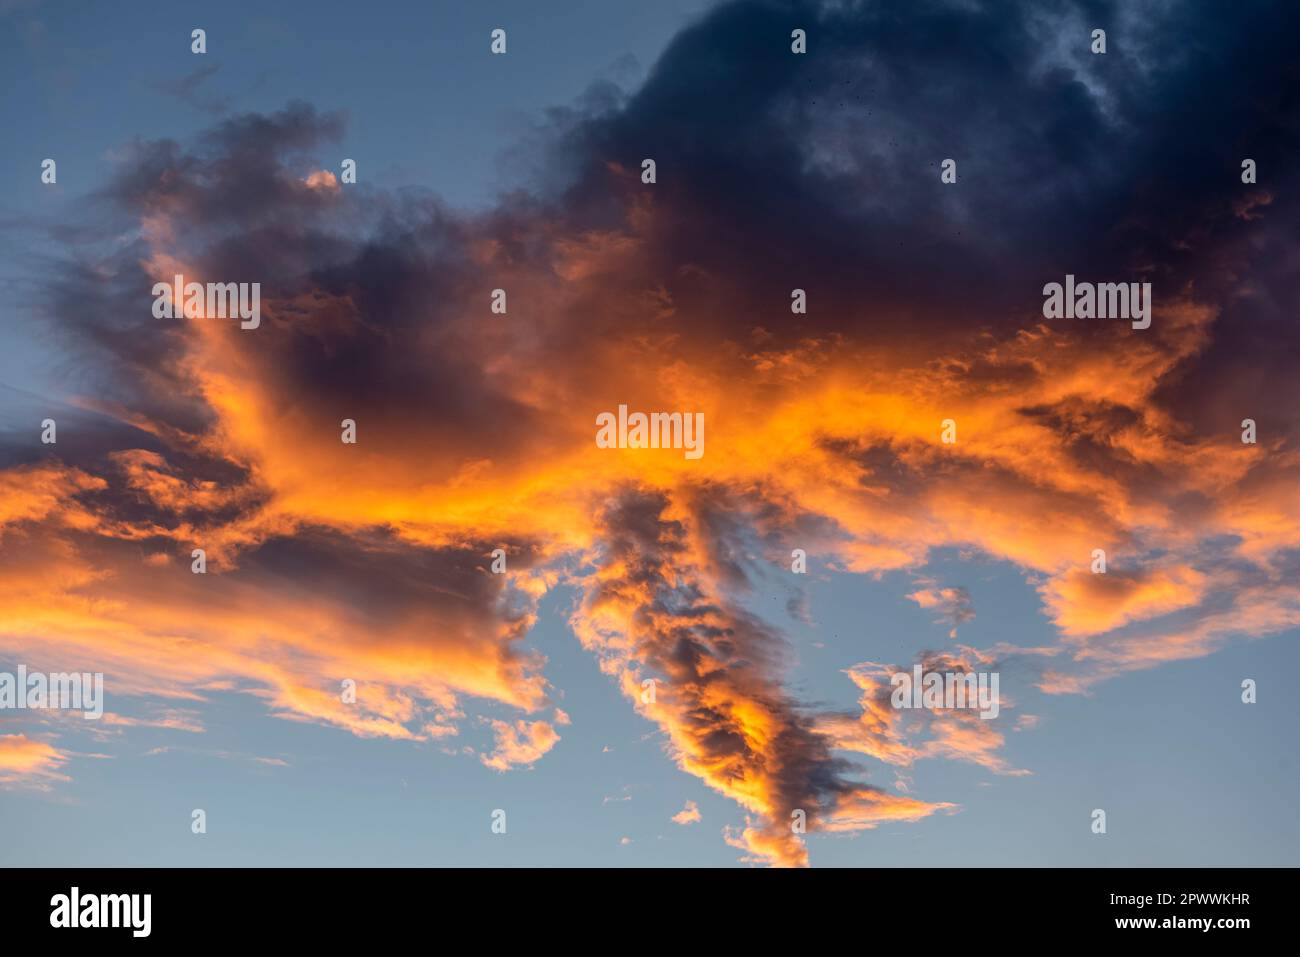 Vista dal basso di una nuvola di cumuli termicamente disonorata al crepuscolo, illuminata dal basso dalla luce del sole della sera o del mattino Foto Stock